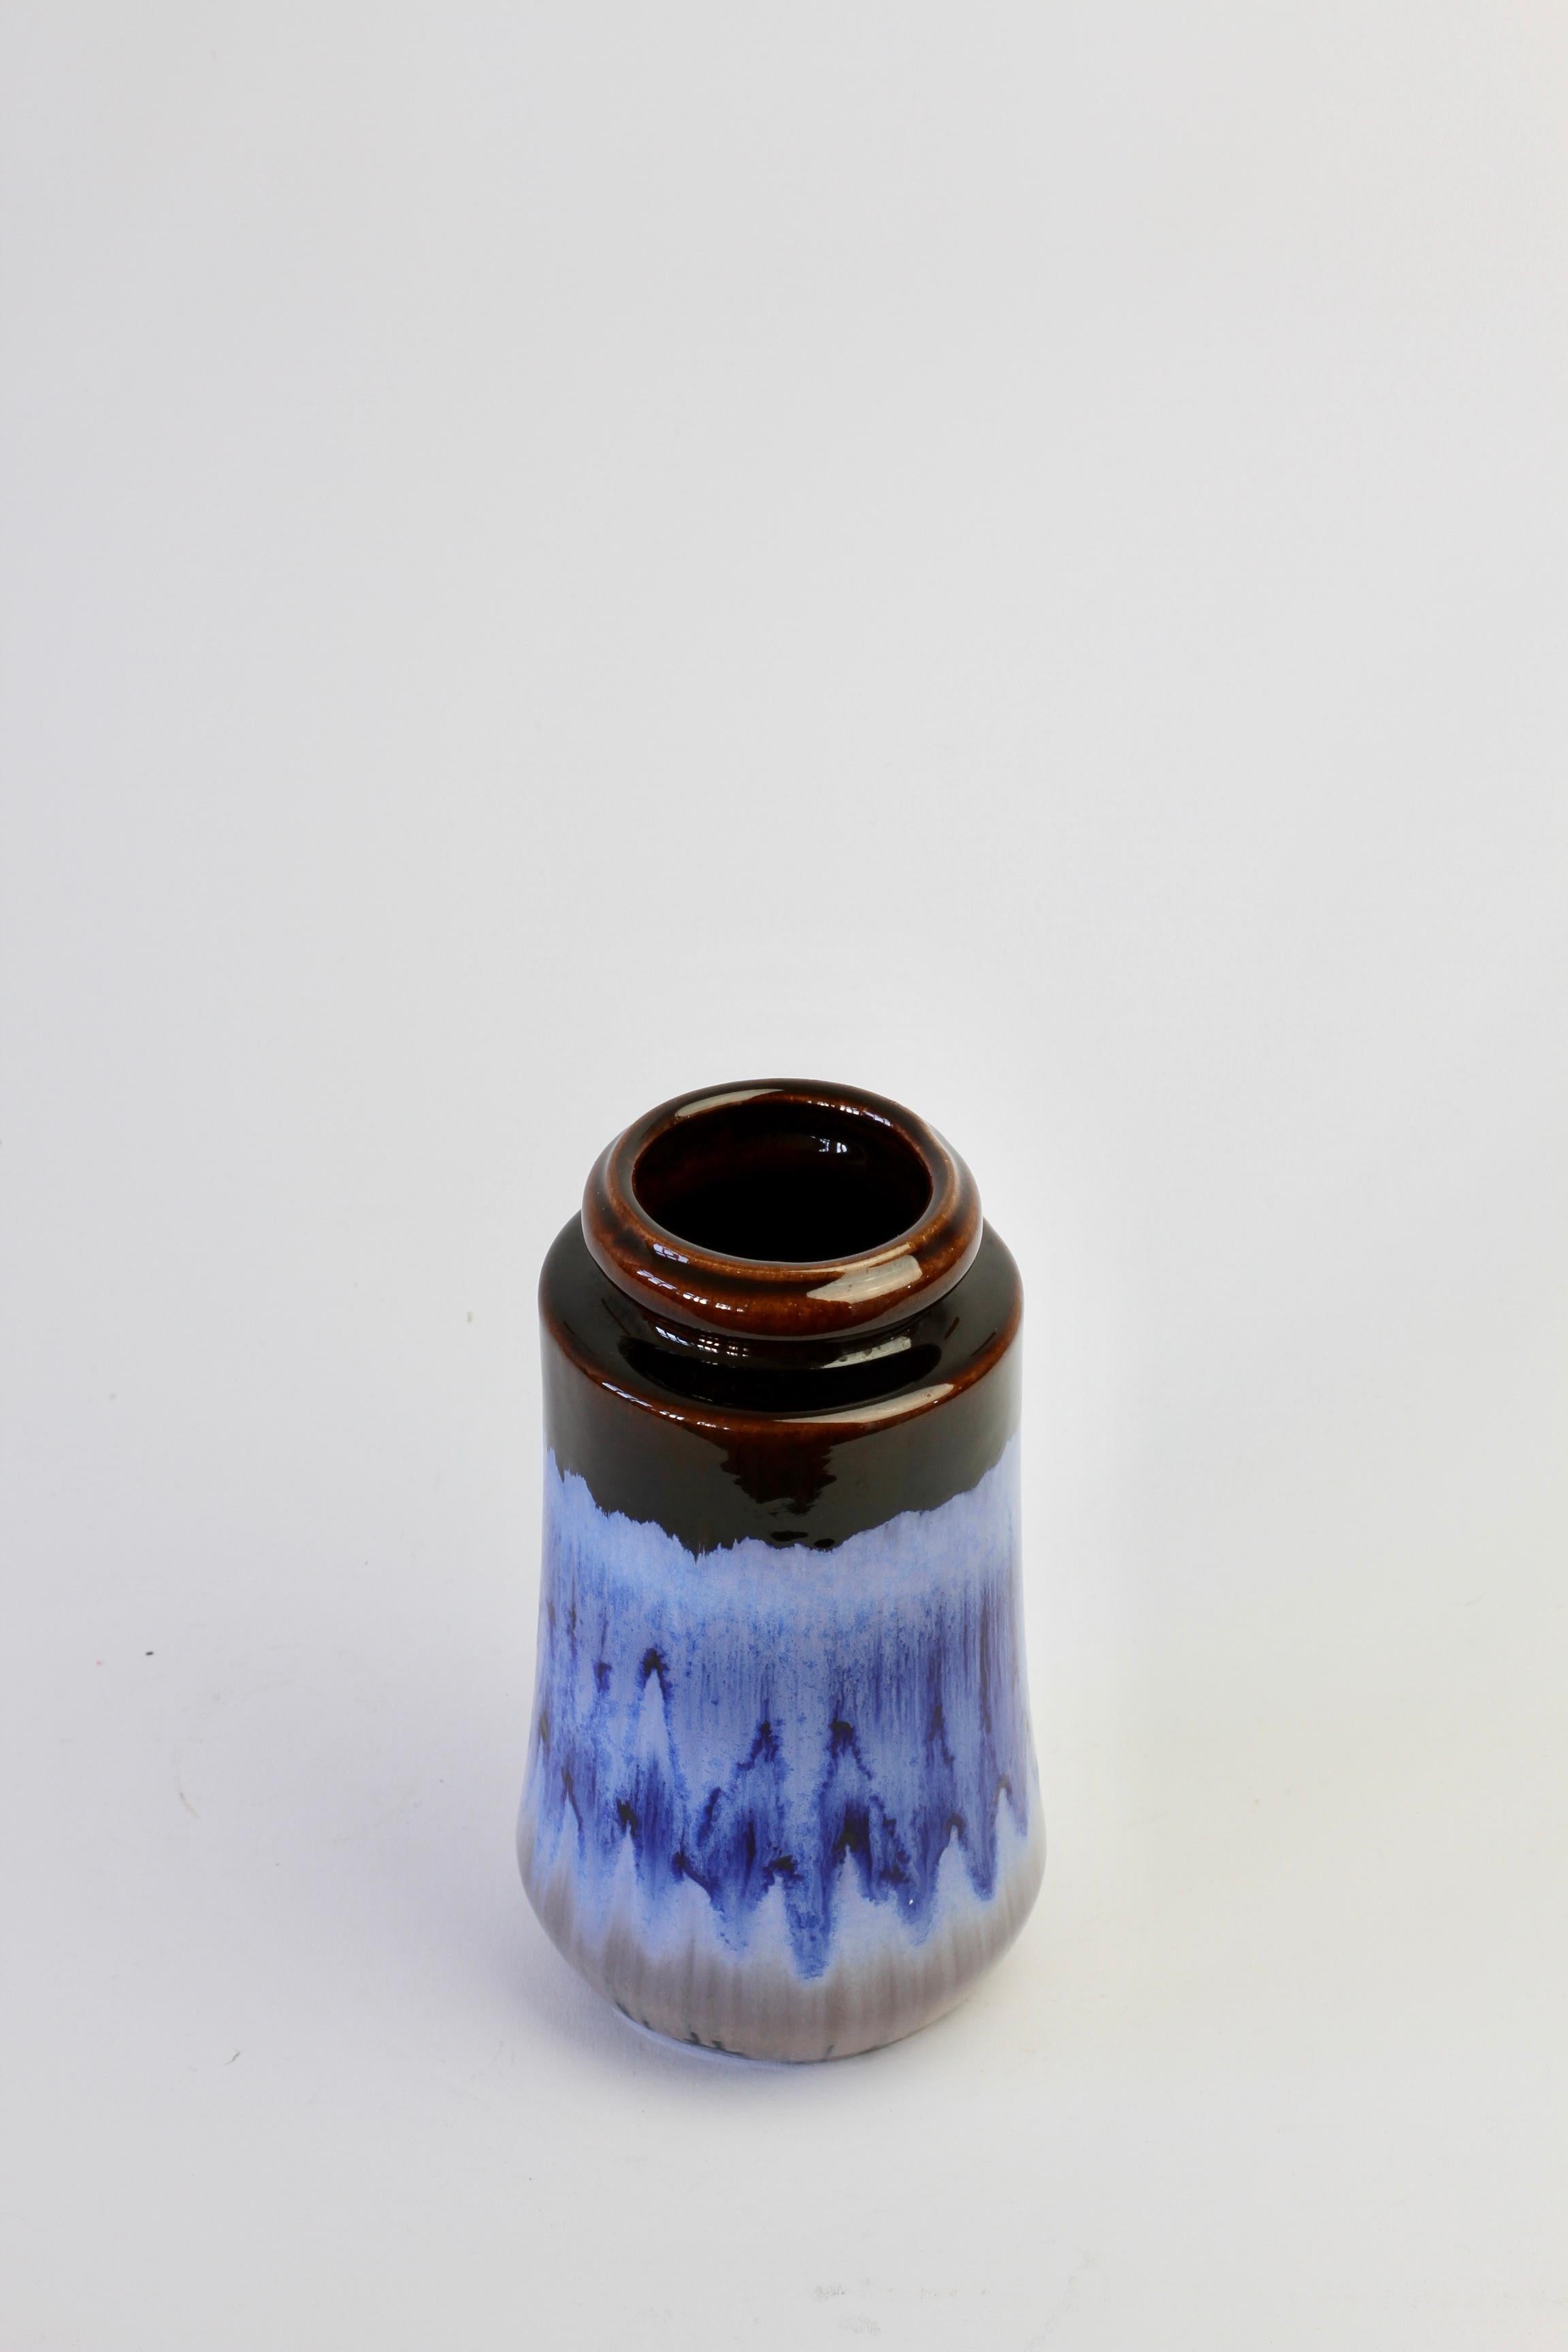 Superbe vase vintage du milieu du siècle, fabriqué par le fabricant ouest-allemand Scheurich Keramik (céramique), vers 1965. Ajoutez une touche de couleur à votre décoration intérieure avec ce magnifique émail bleu à gouttes.

Forme numéro 549 - 21.